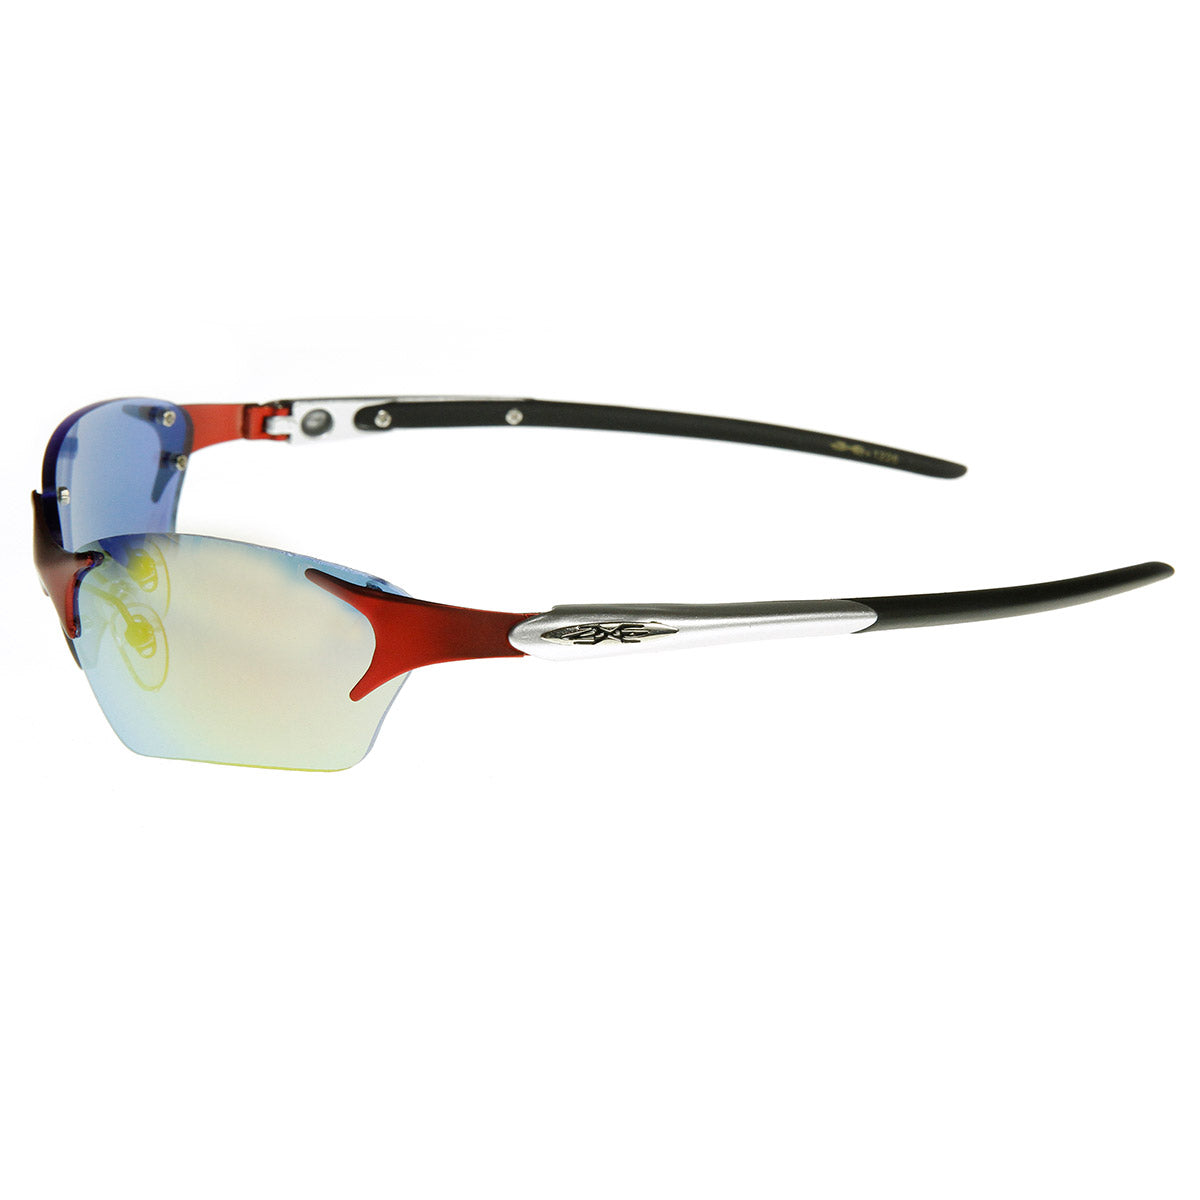 X-Loop Sunglasses – Slim Shadies Celebrity Sunglasses